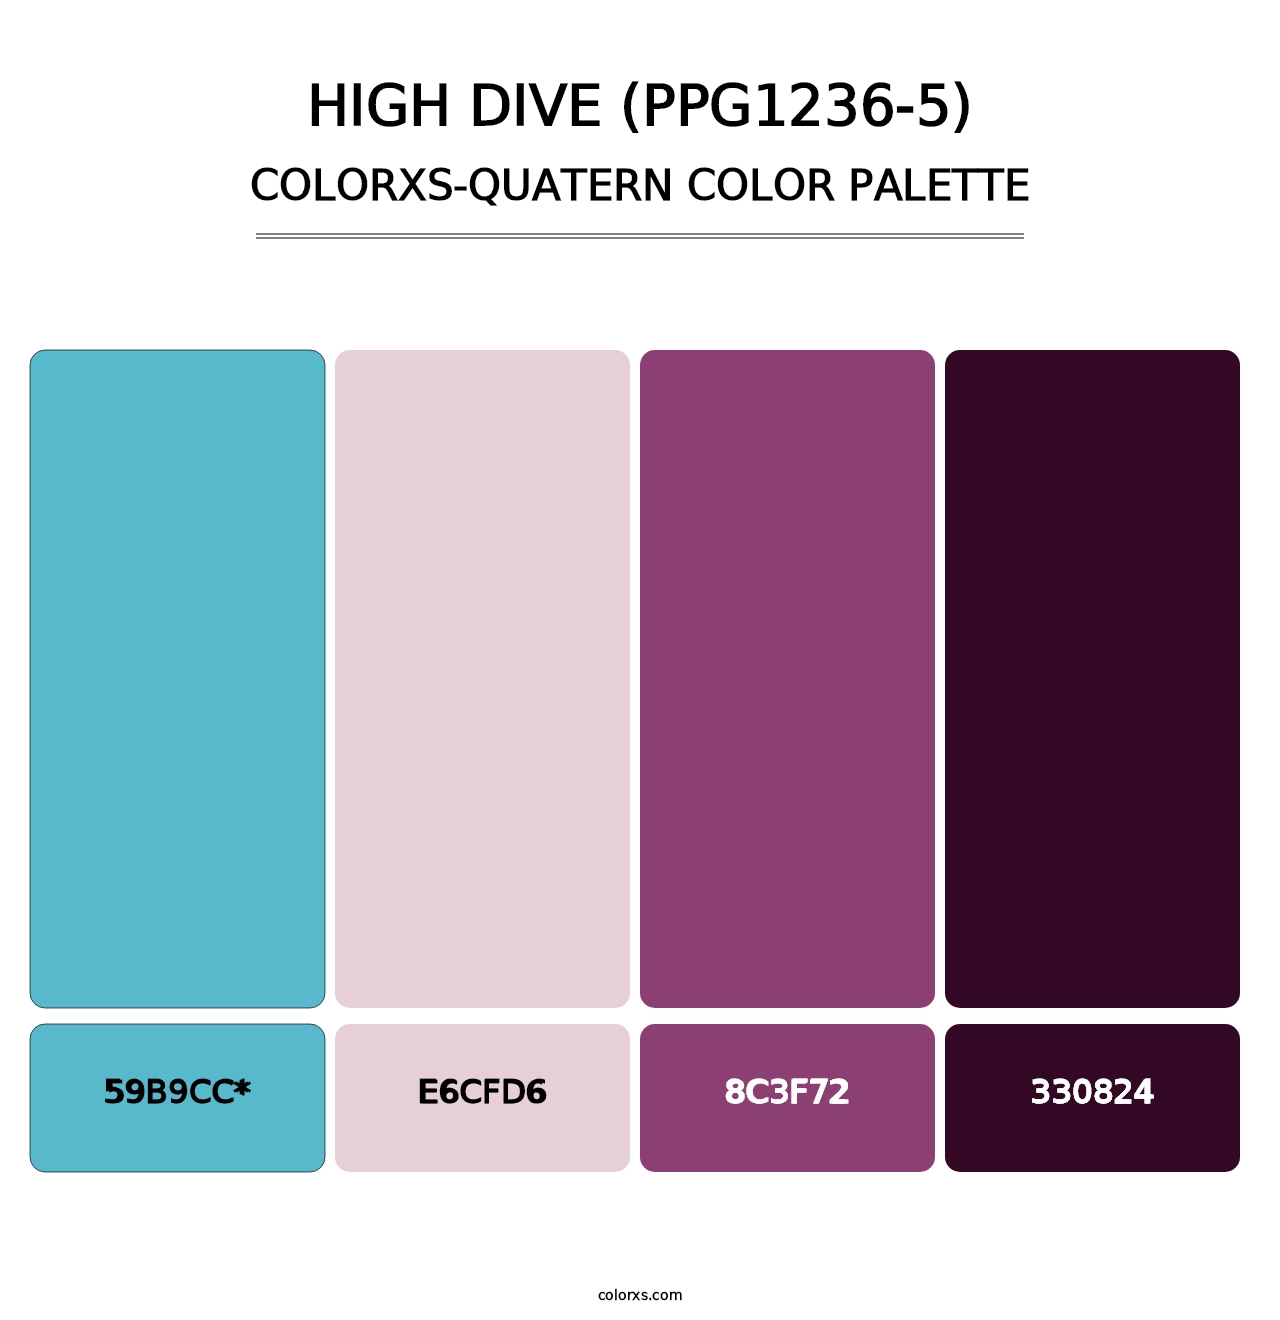 High Dive (PPG1236-5) - Colorxs Quatern Palette